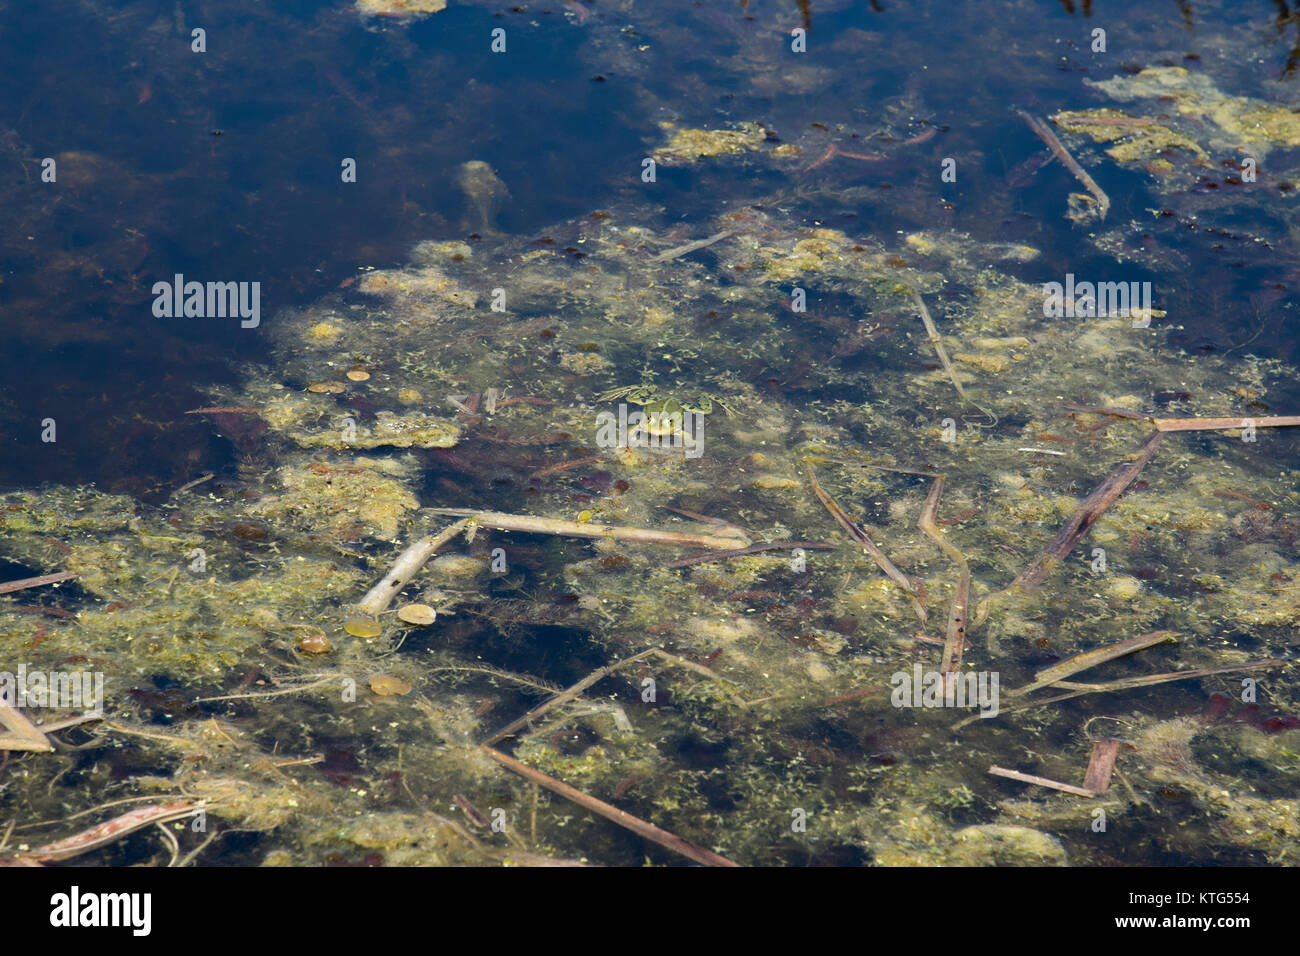 Rana verde in Rietzer vedere (Lago Rietz) che è una riserva naturale vicino alla città di Brandeburgo nella Germania nord-orientale con due laghi poco profondi e partite Foto Stock